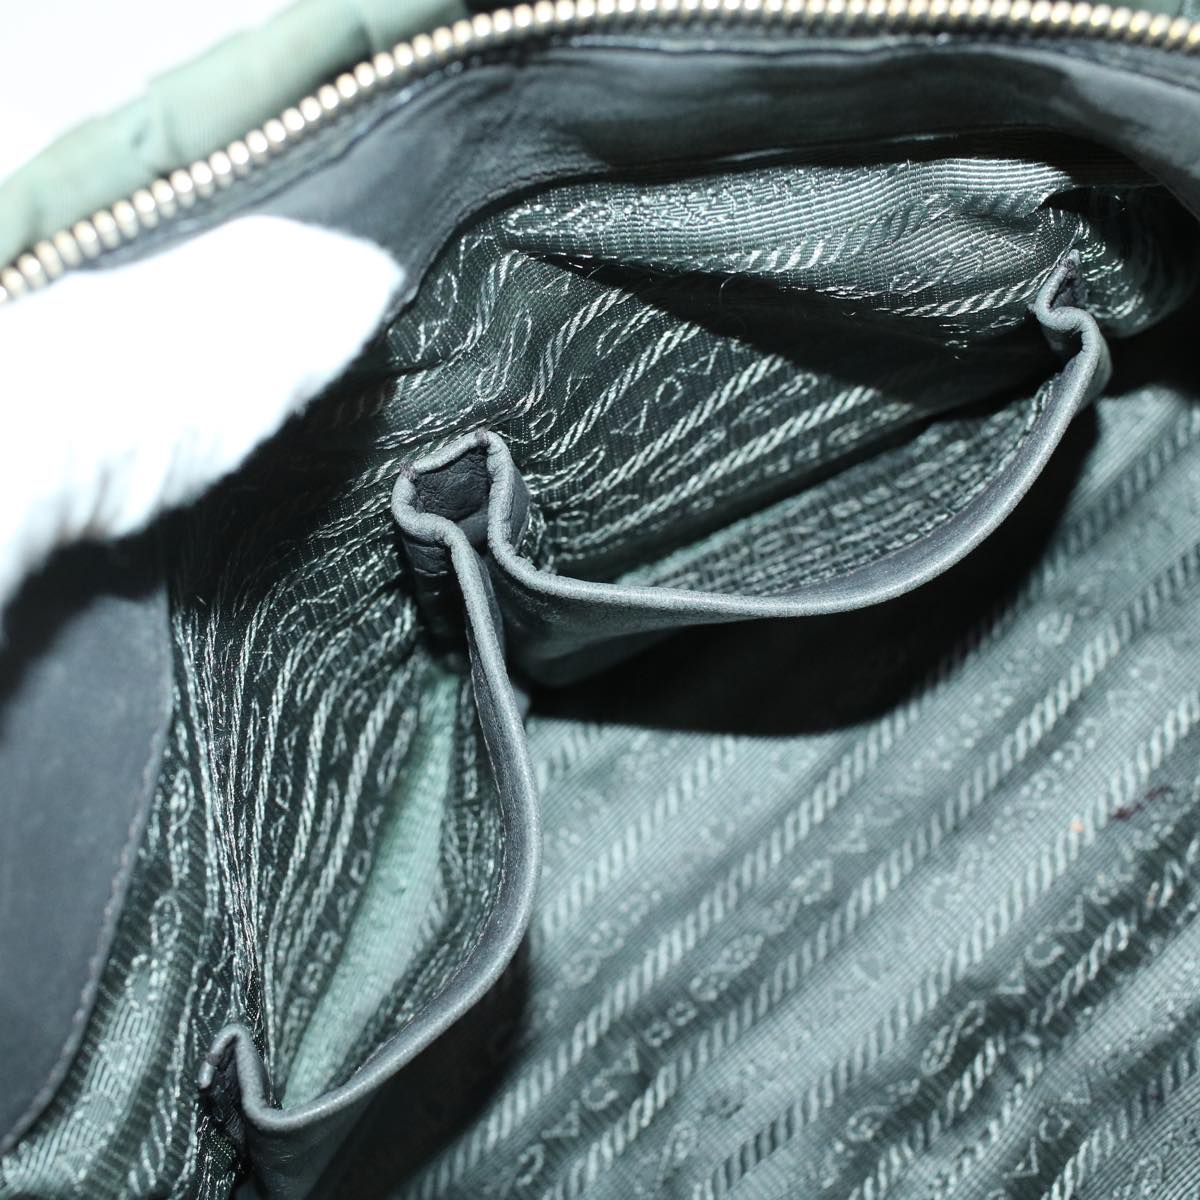 PRADA Hand Bag Nylon 2way Shoulder Bag Khaki Auth 44051